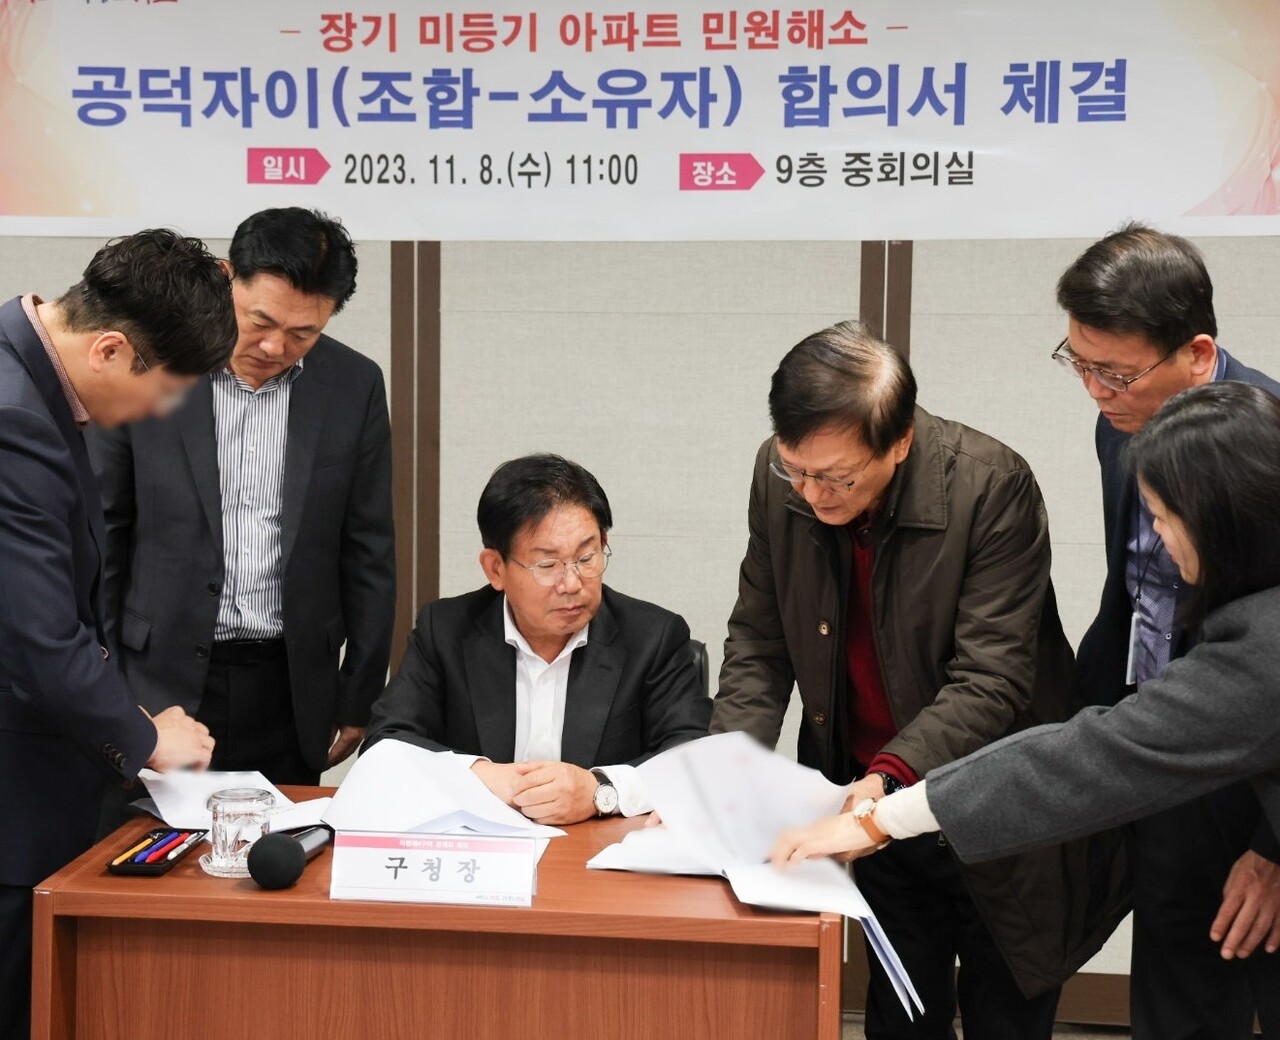 서울 마포구 공덕자이의 미등기 문제가 타개됐다. 박강수 구청장이 관계자들과 서류를 작성하고 있다. [사진=마포구 제공]